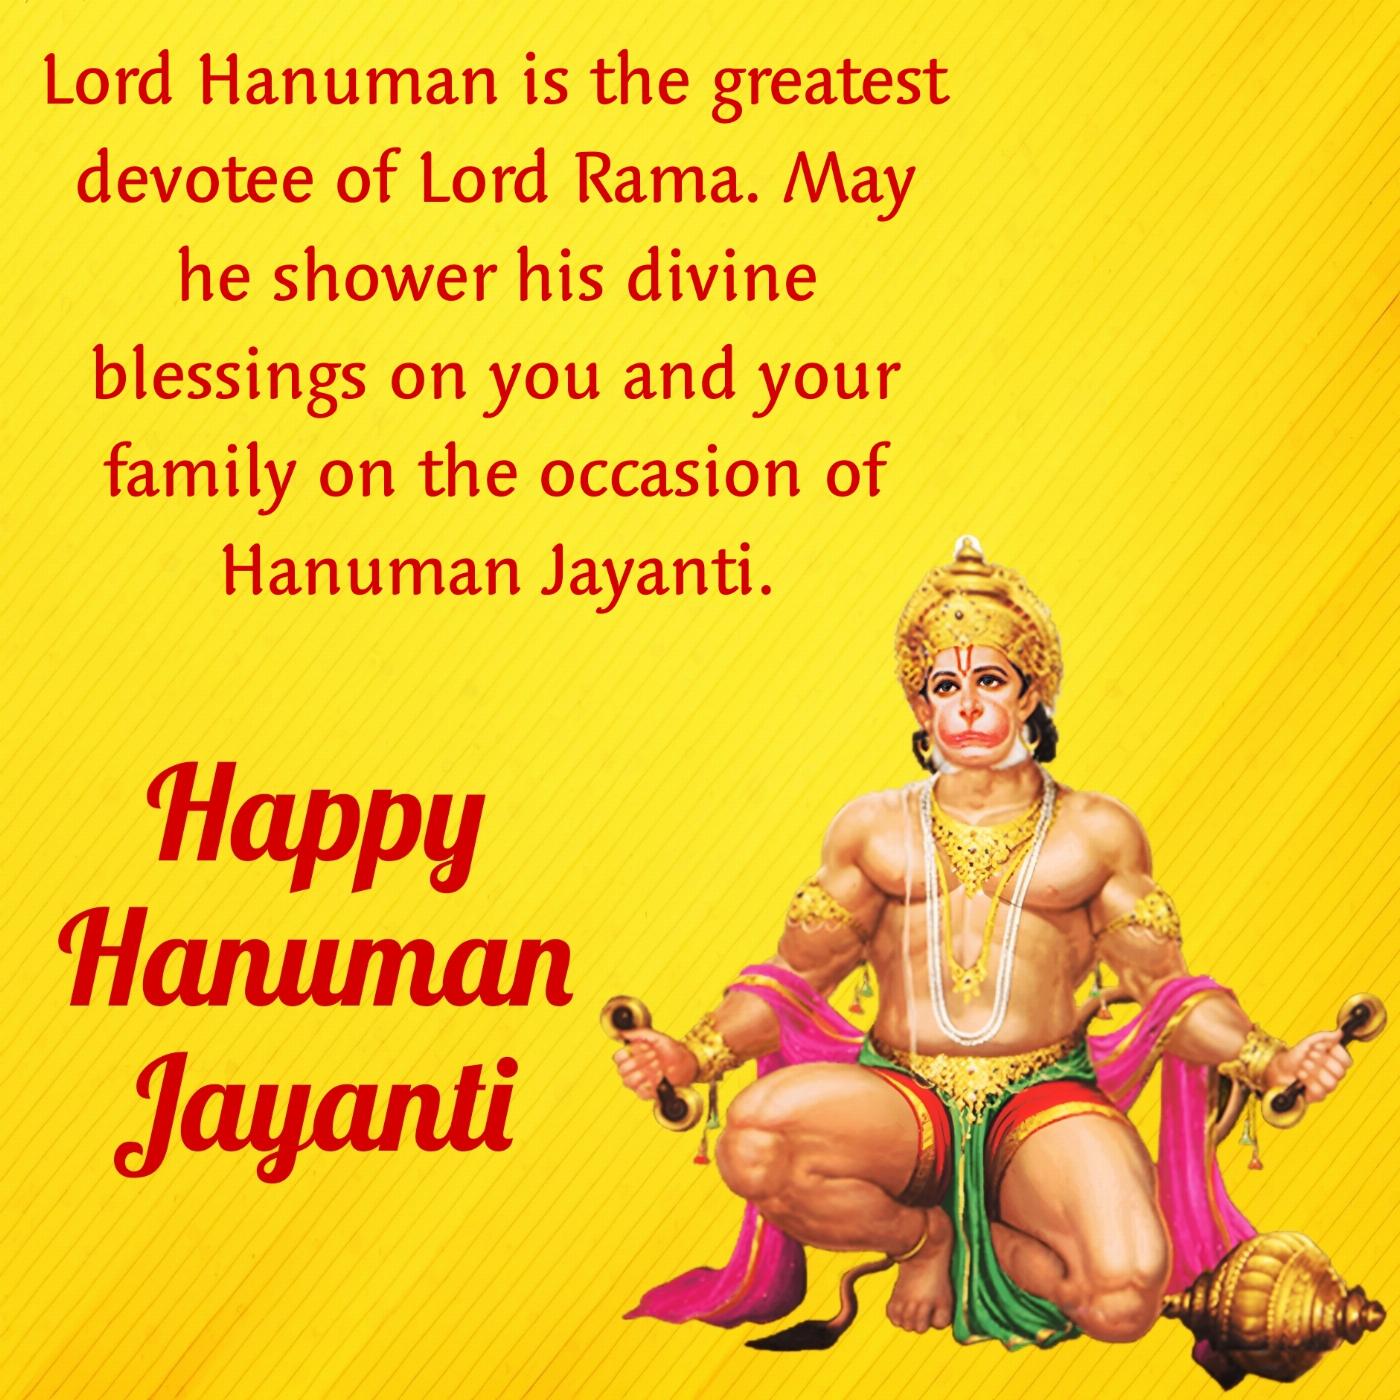 Lord Hanuman is the greatest devotee of Lord Rama